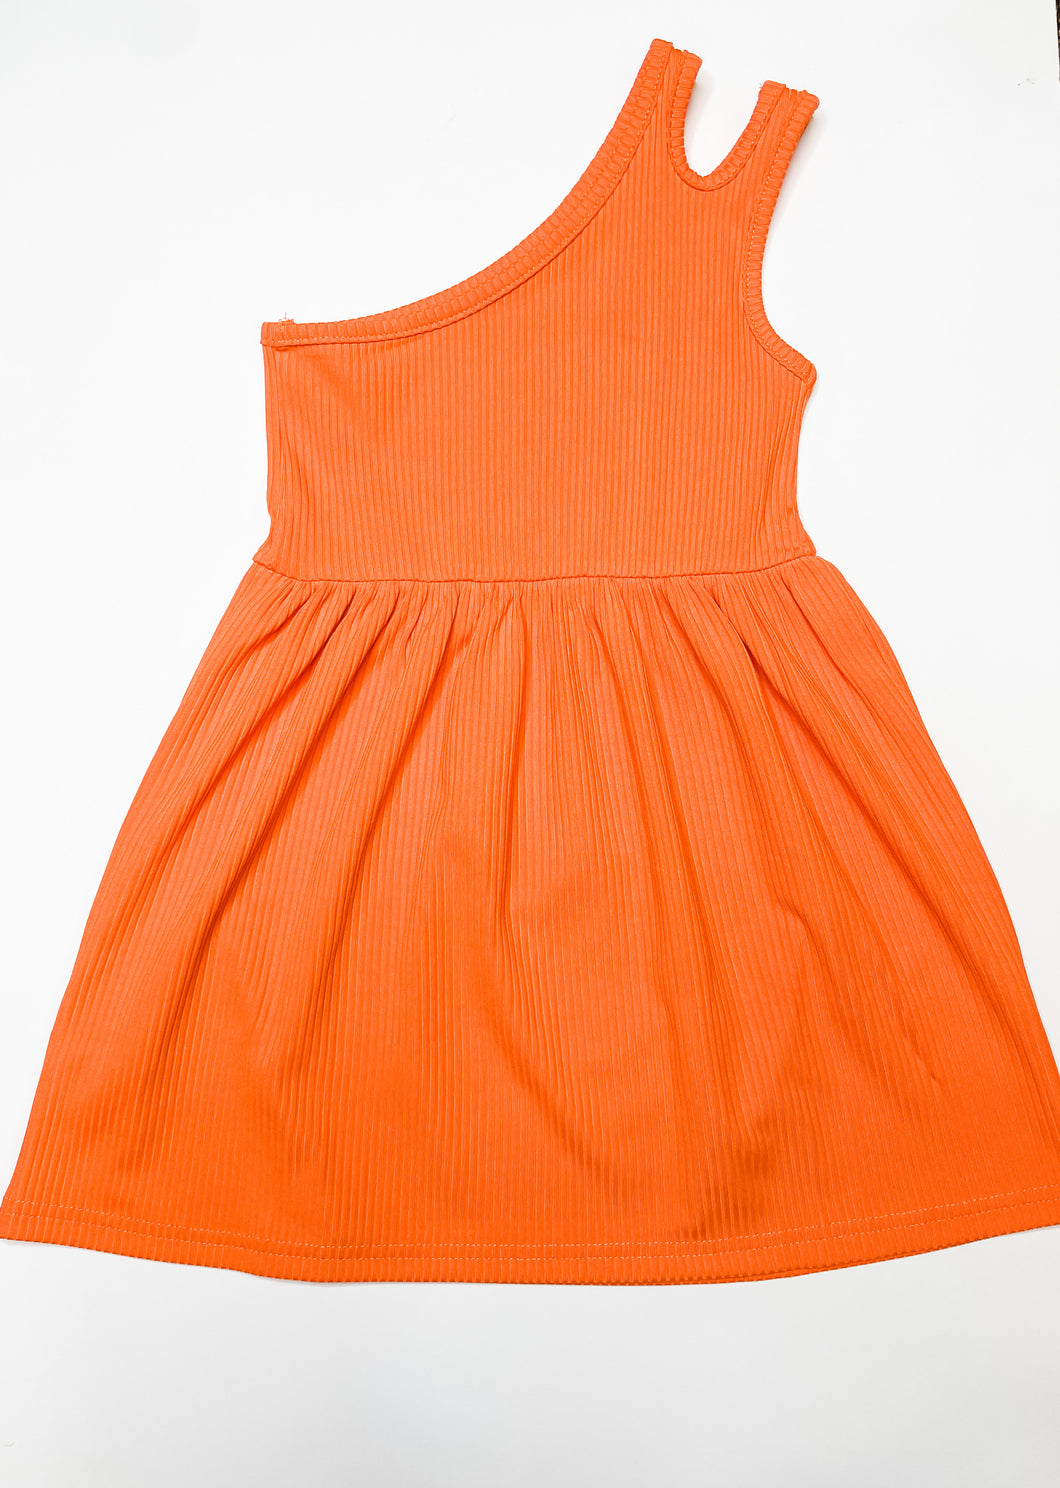 Orange One Shoulder Dress